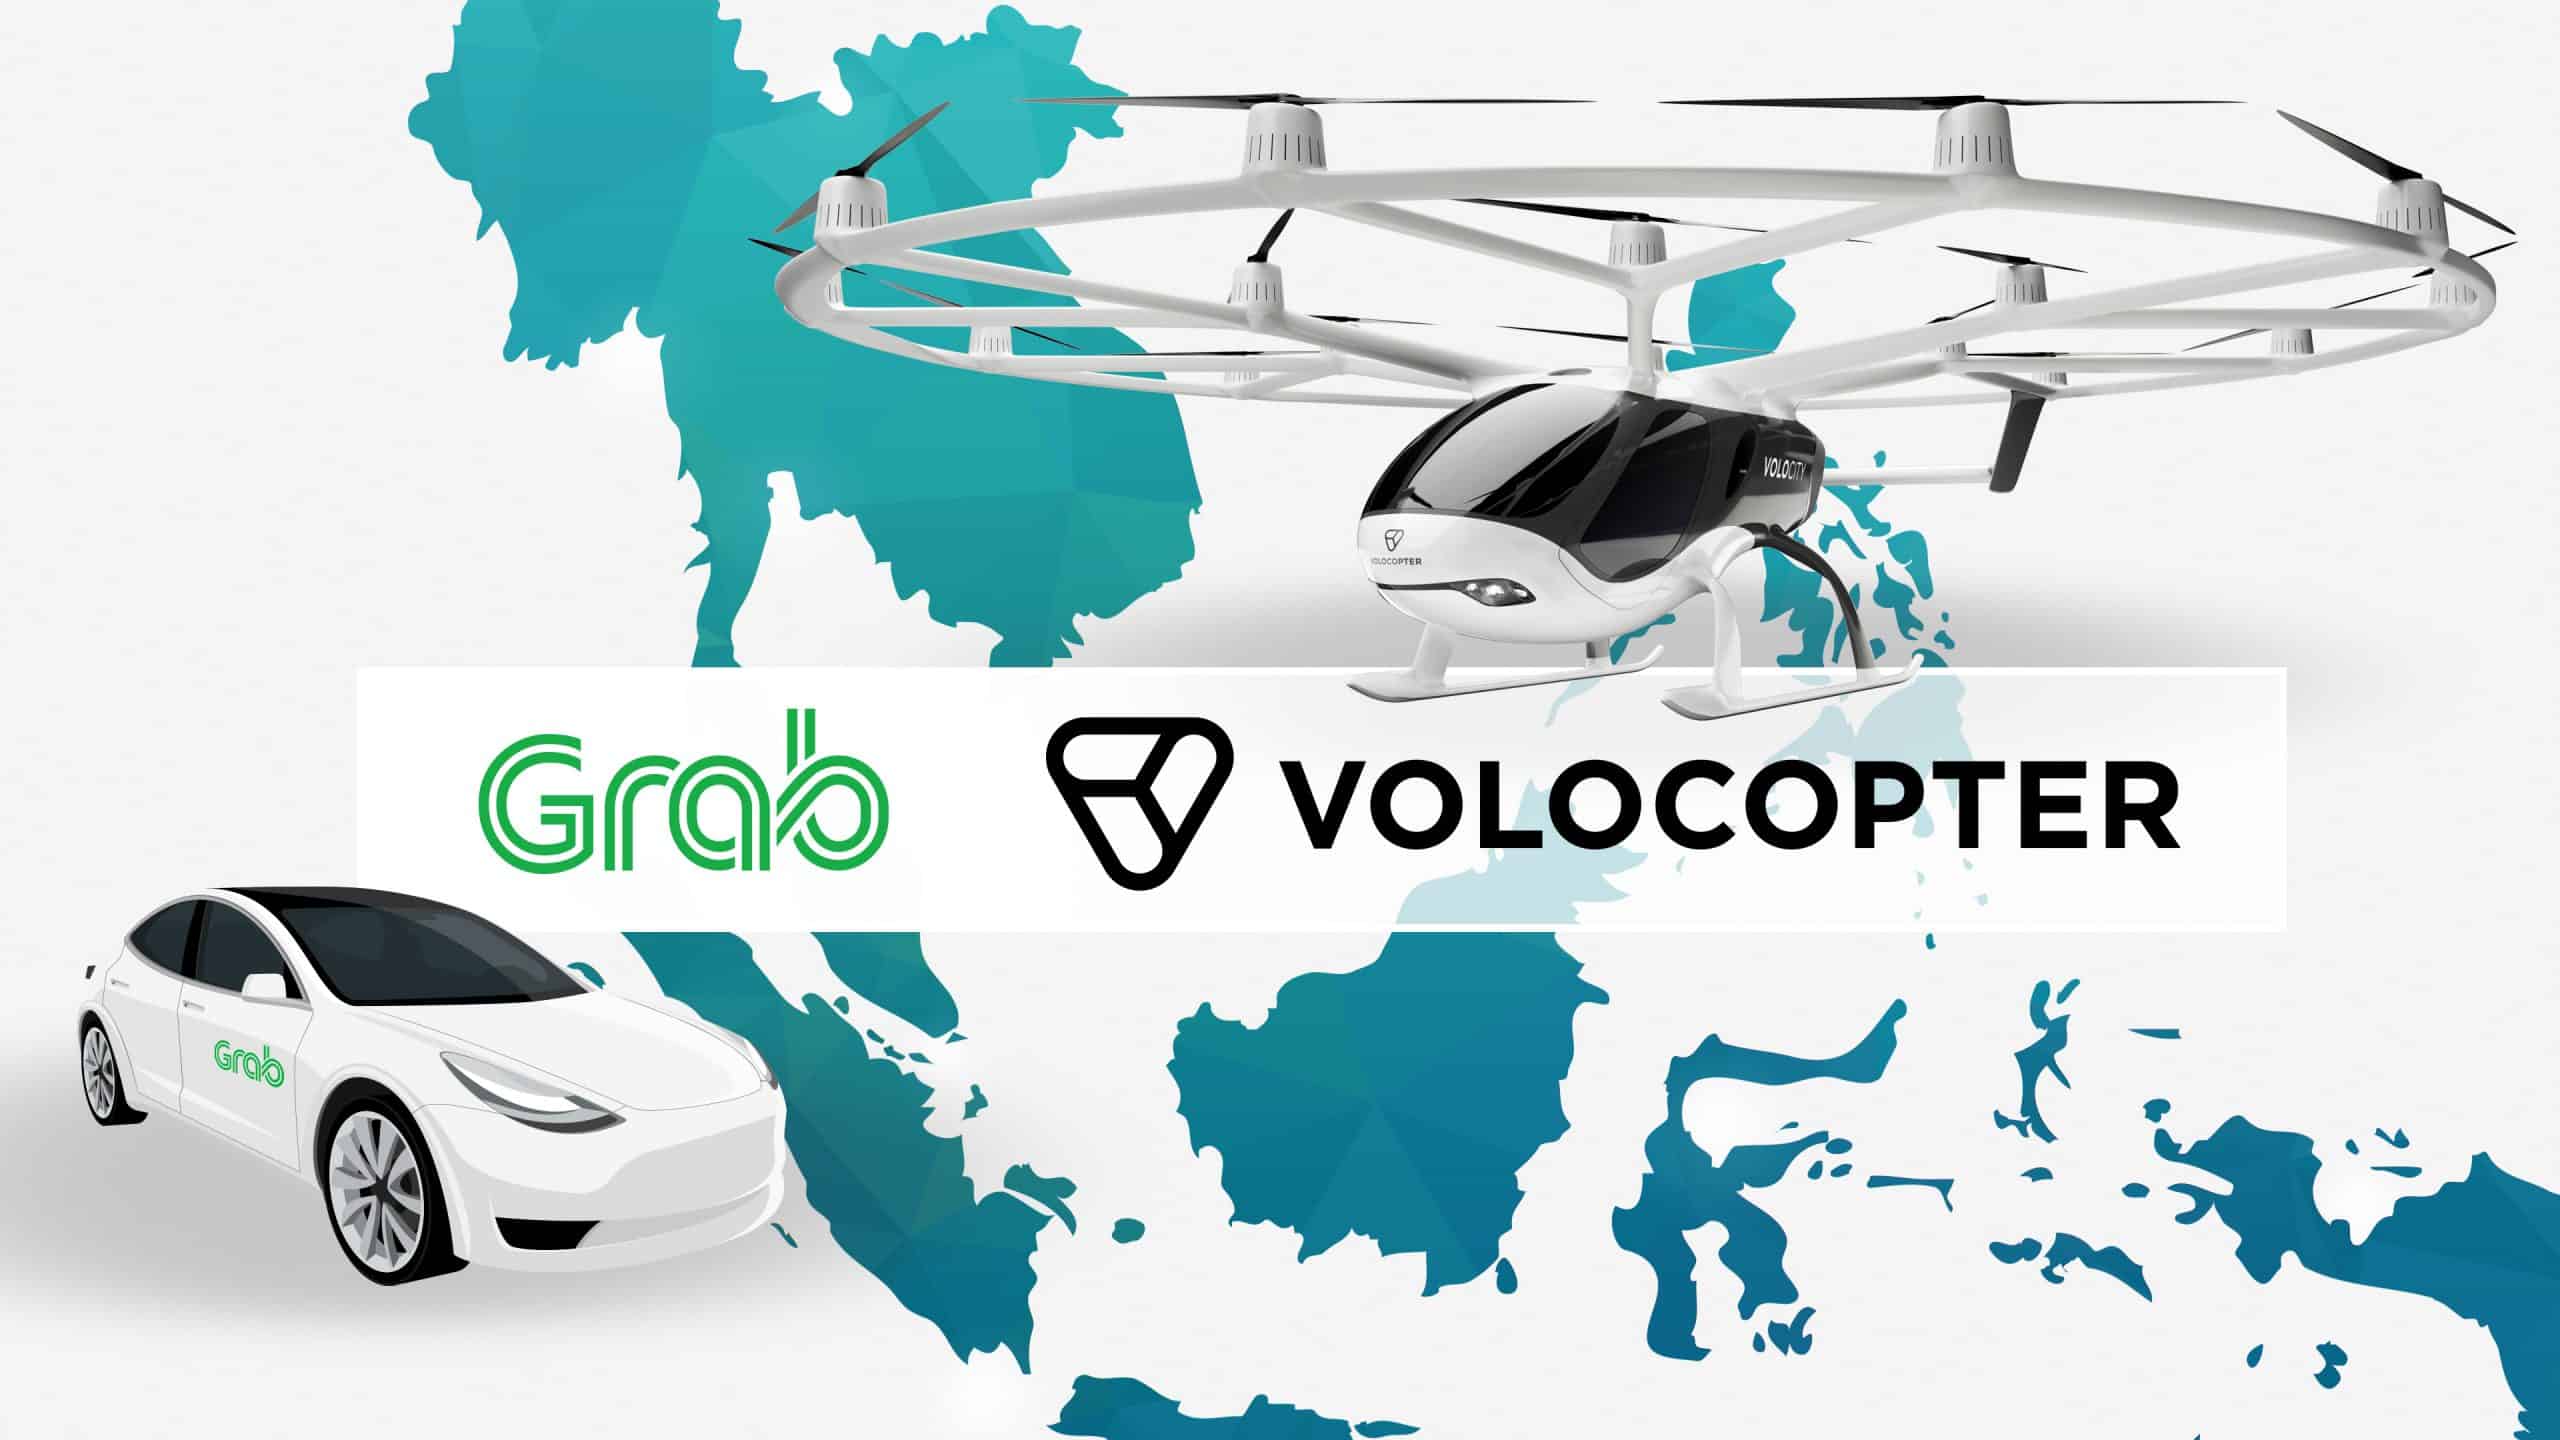 Grab et Volocopter ont annoncé un partenariat pour étudier la mise en place d'un service de taxis volants